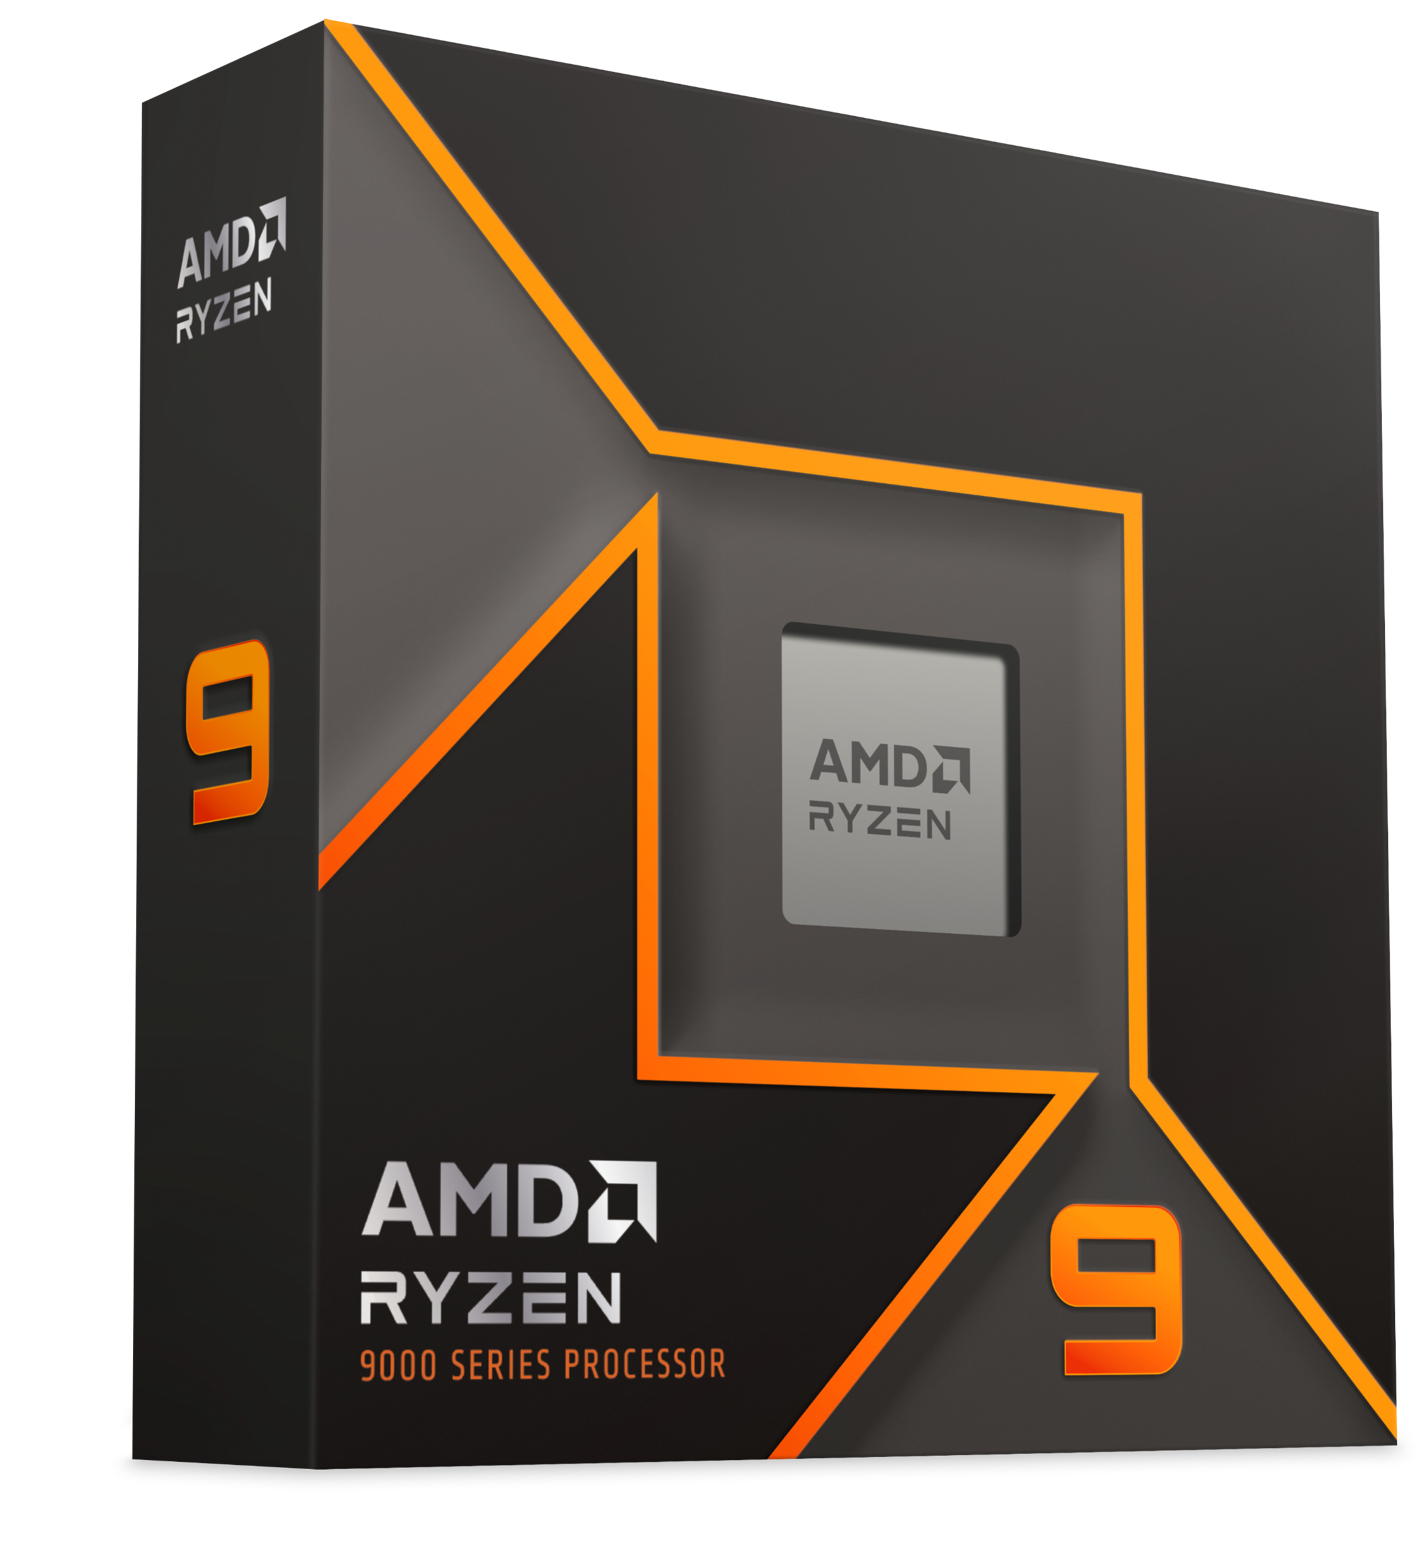 AMD Ryzen 9000 "Zen 5" Masaüstü CPU'ların Özellikleri, Performansı, Fiyatı ve Stok Durumu - Şimdiye Kadar Bildiğimiz Her Şey 5